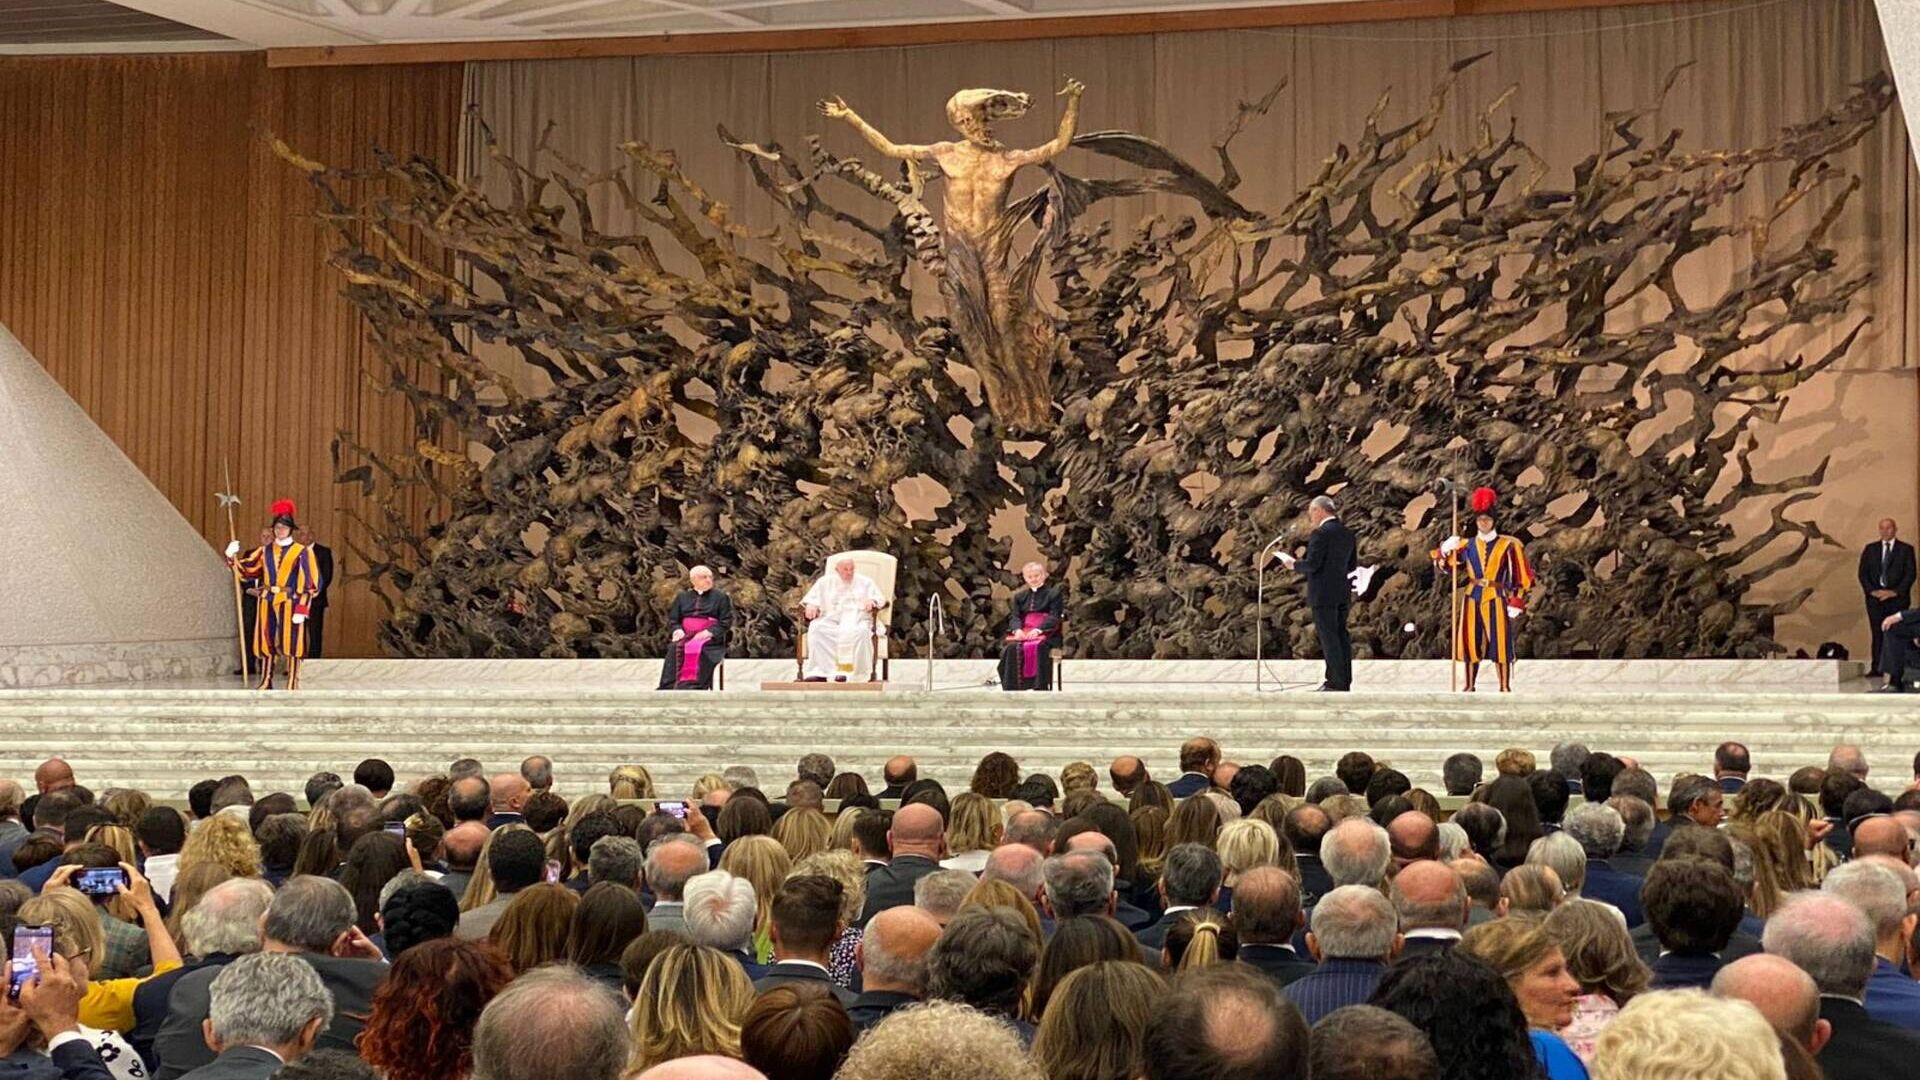 L'Udienza del Santo Padre all'Assemblea di Confindustria il 12 settembre 2022 in Vaticano